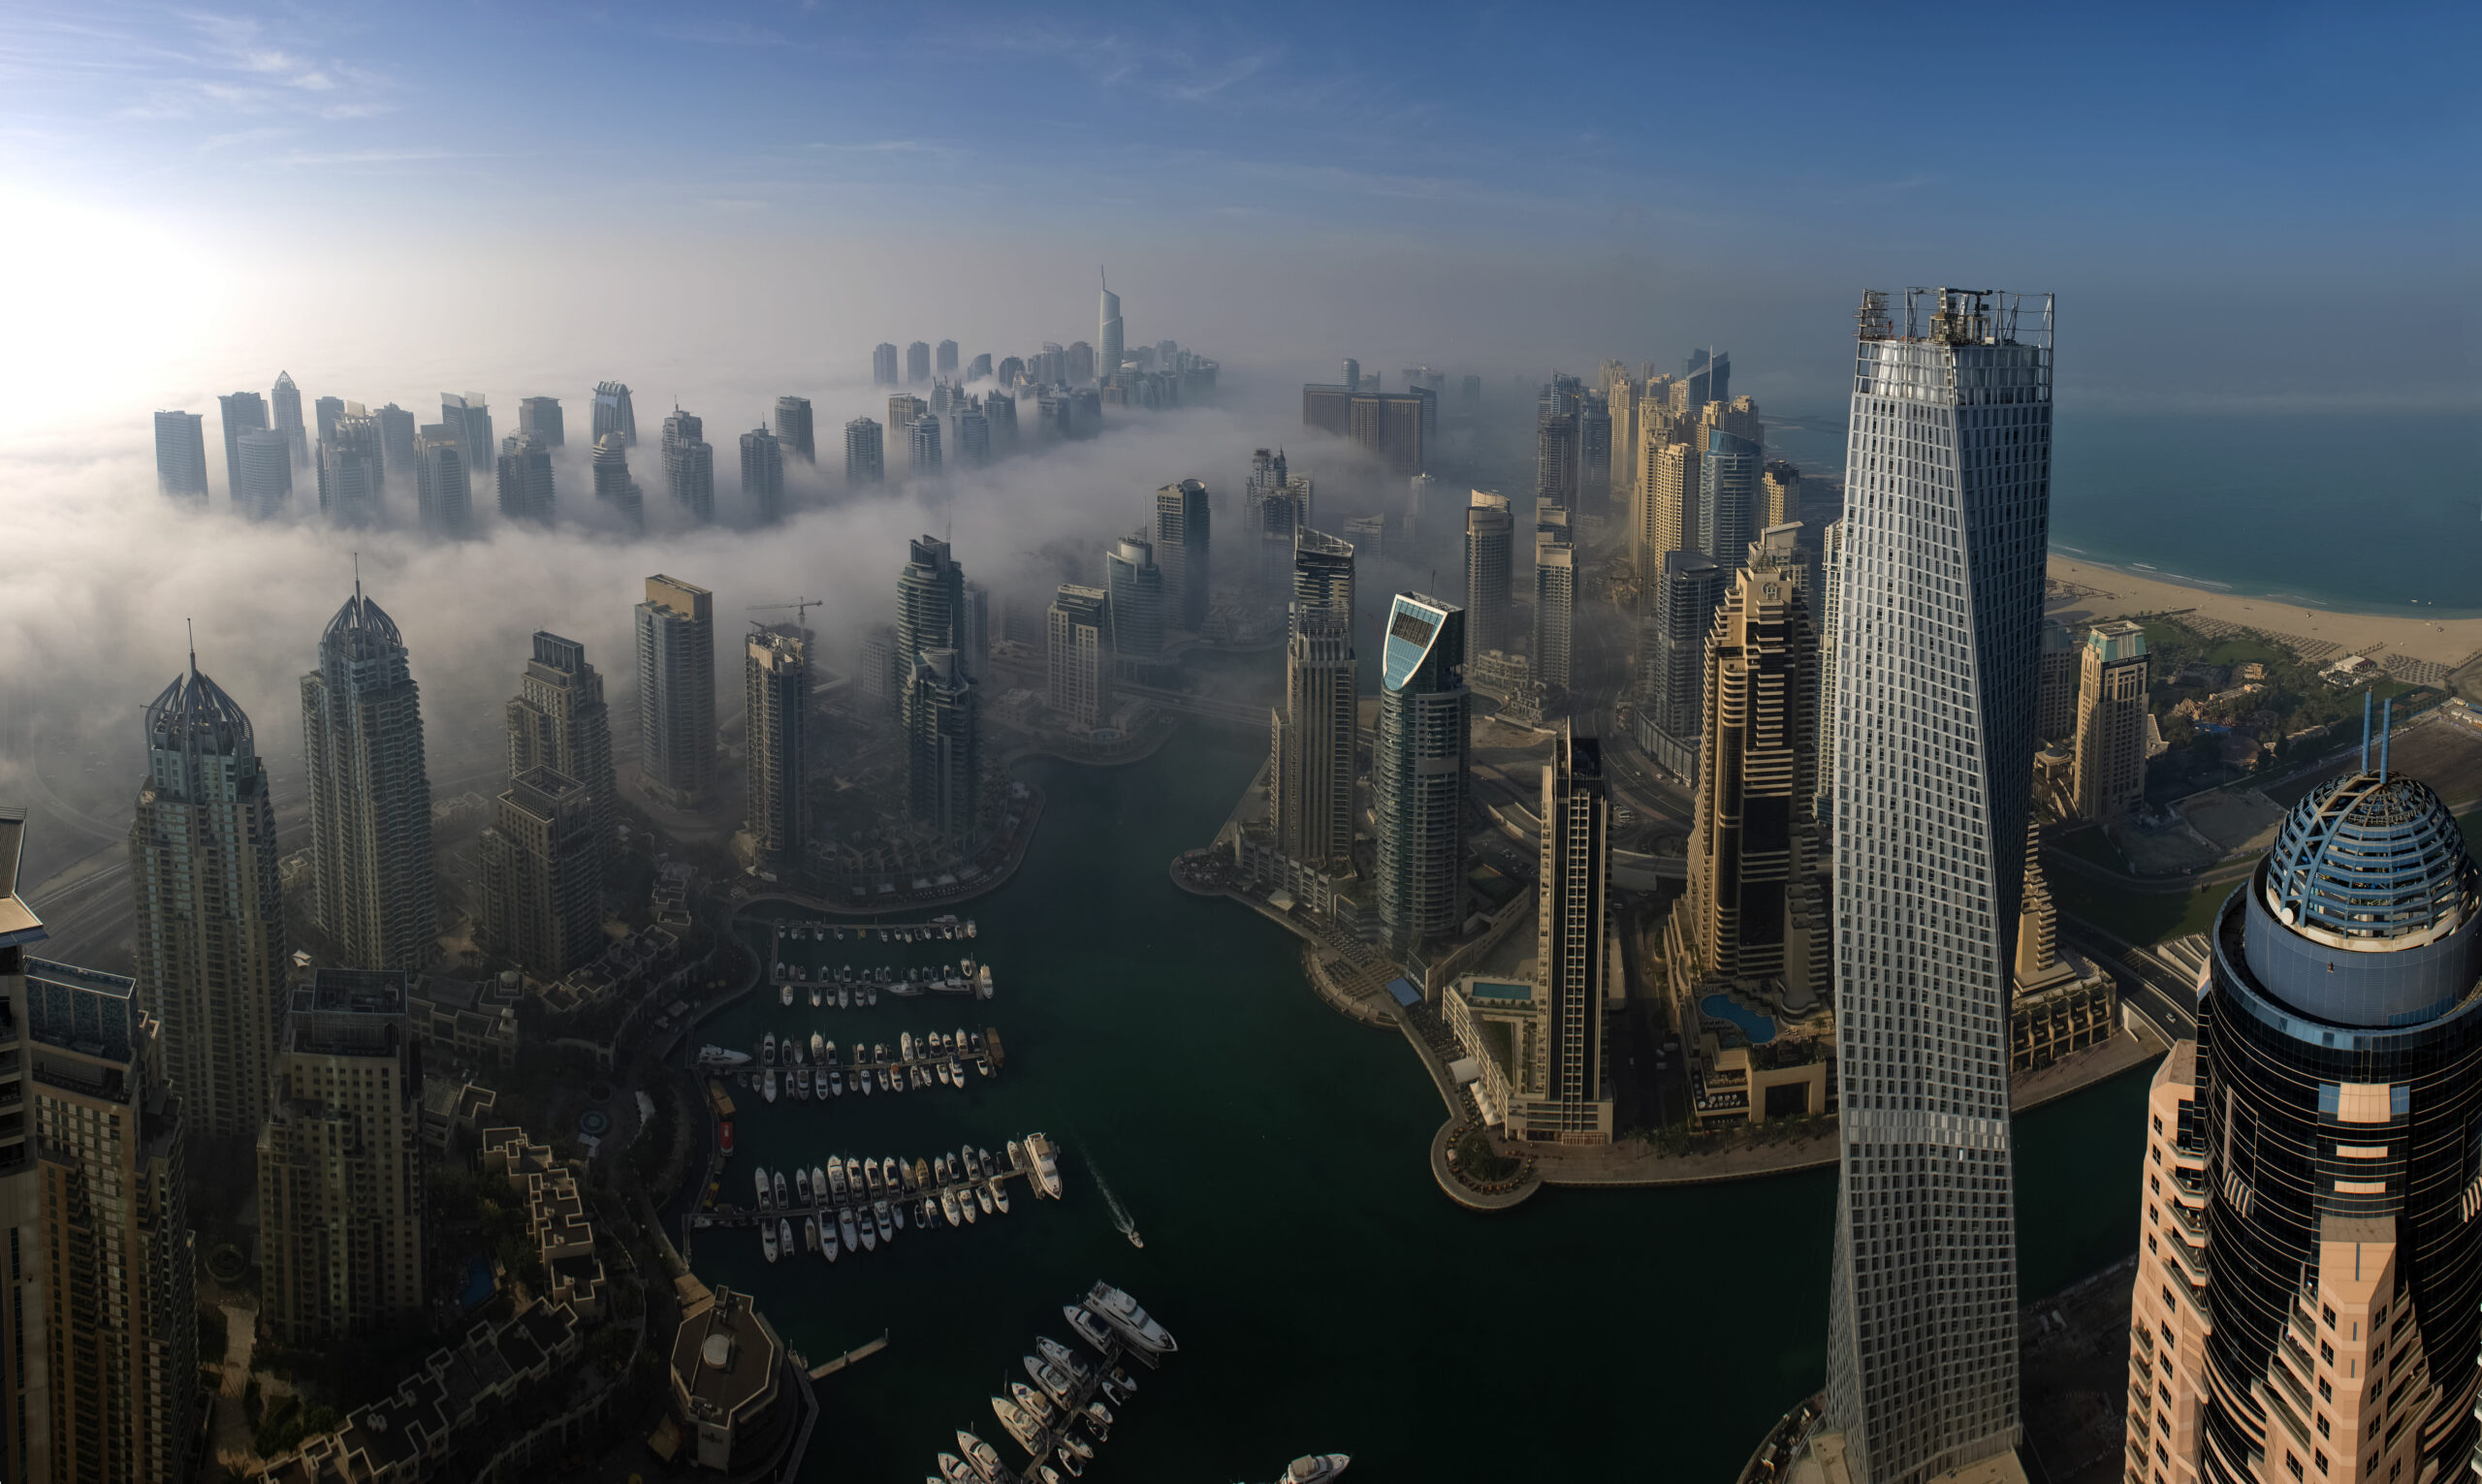 La demande russe pour l'immobilier à Dubaï ralentit – mais celle de la Chine reprend, selon le président de DAMAC